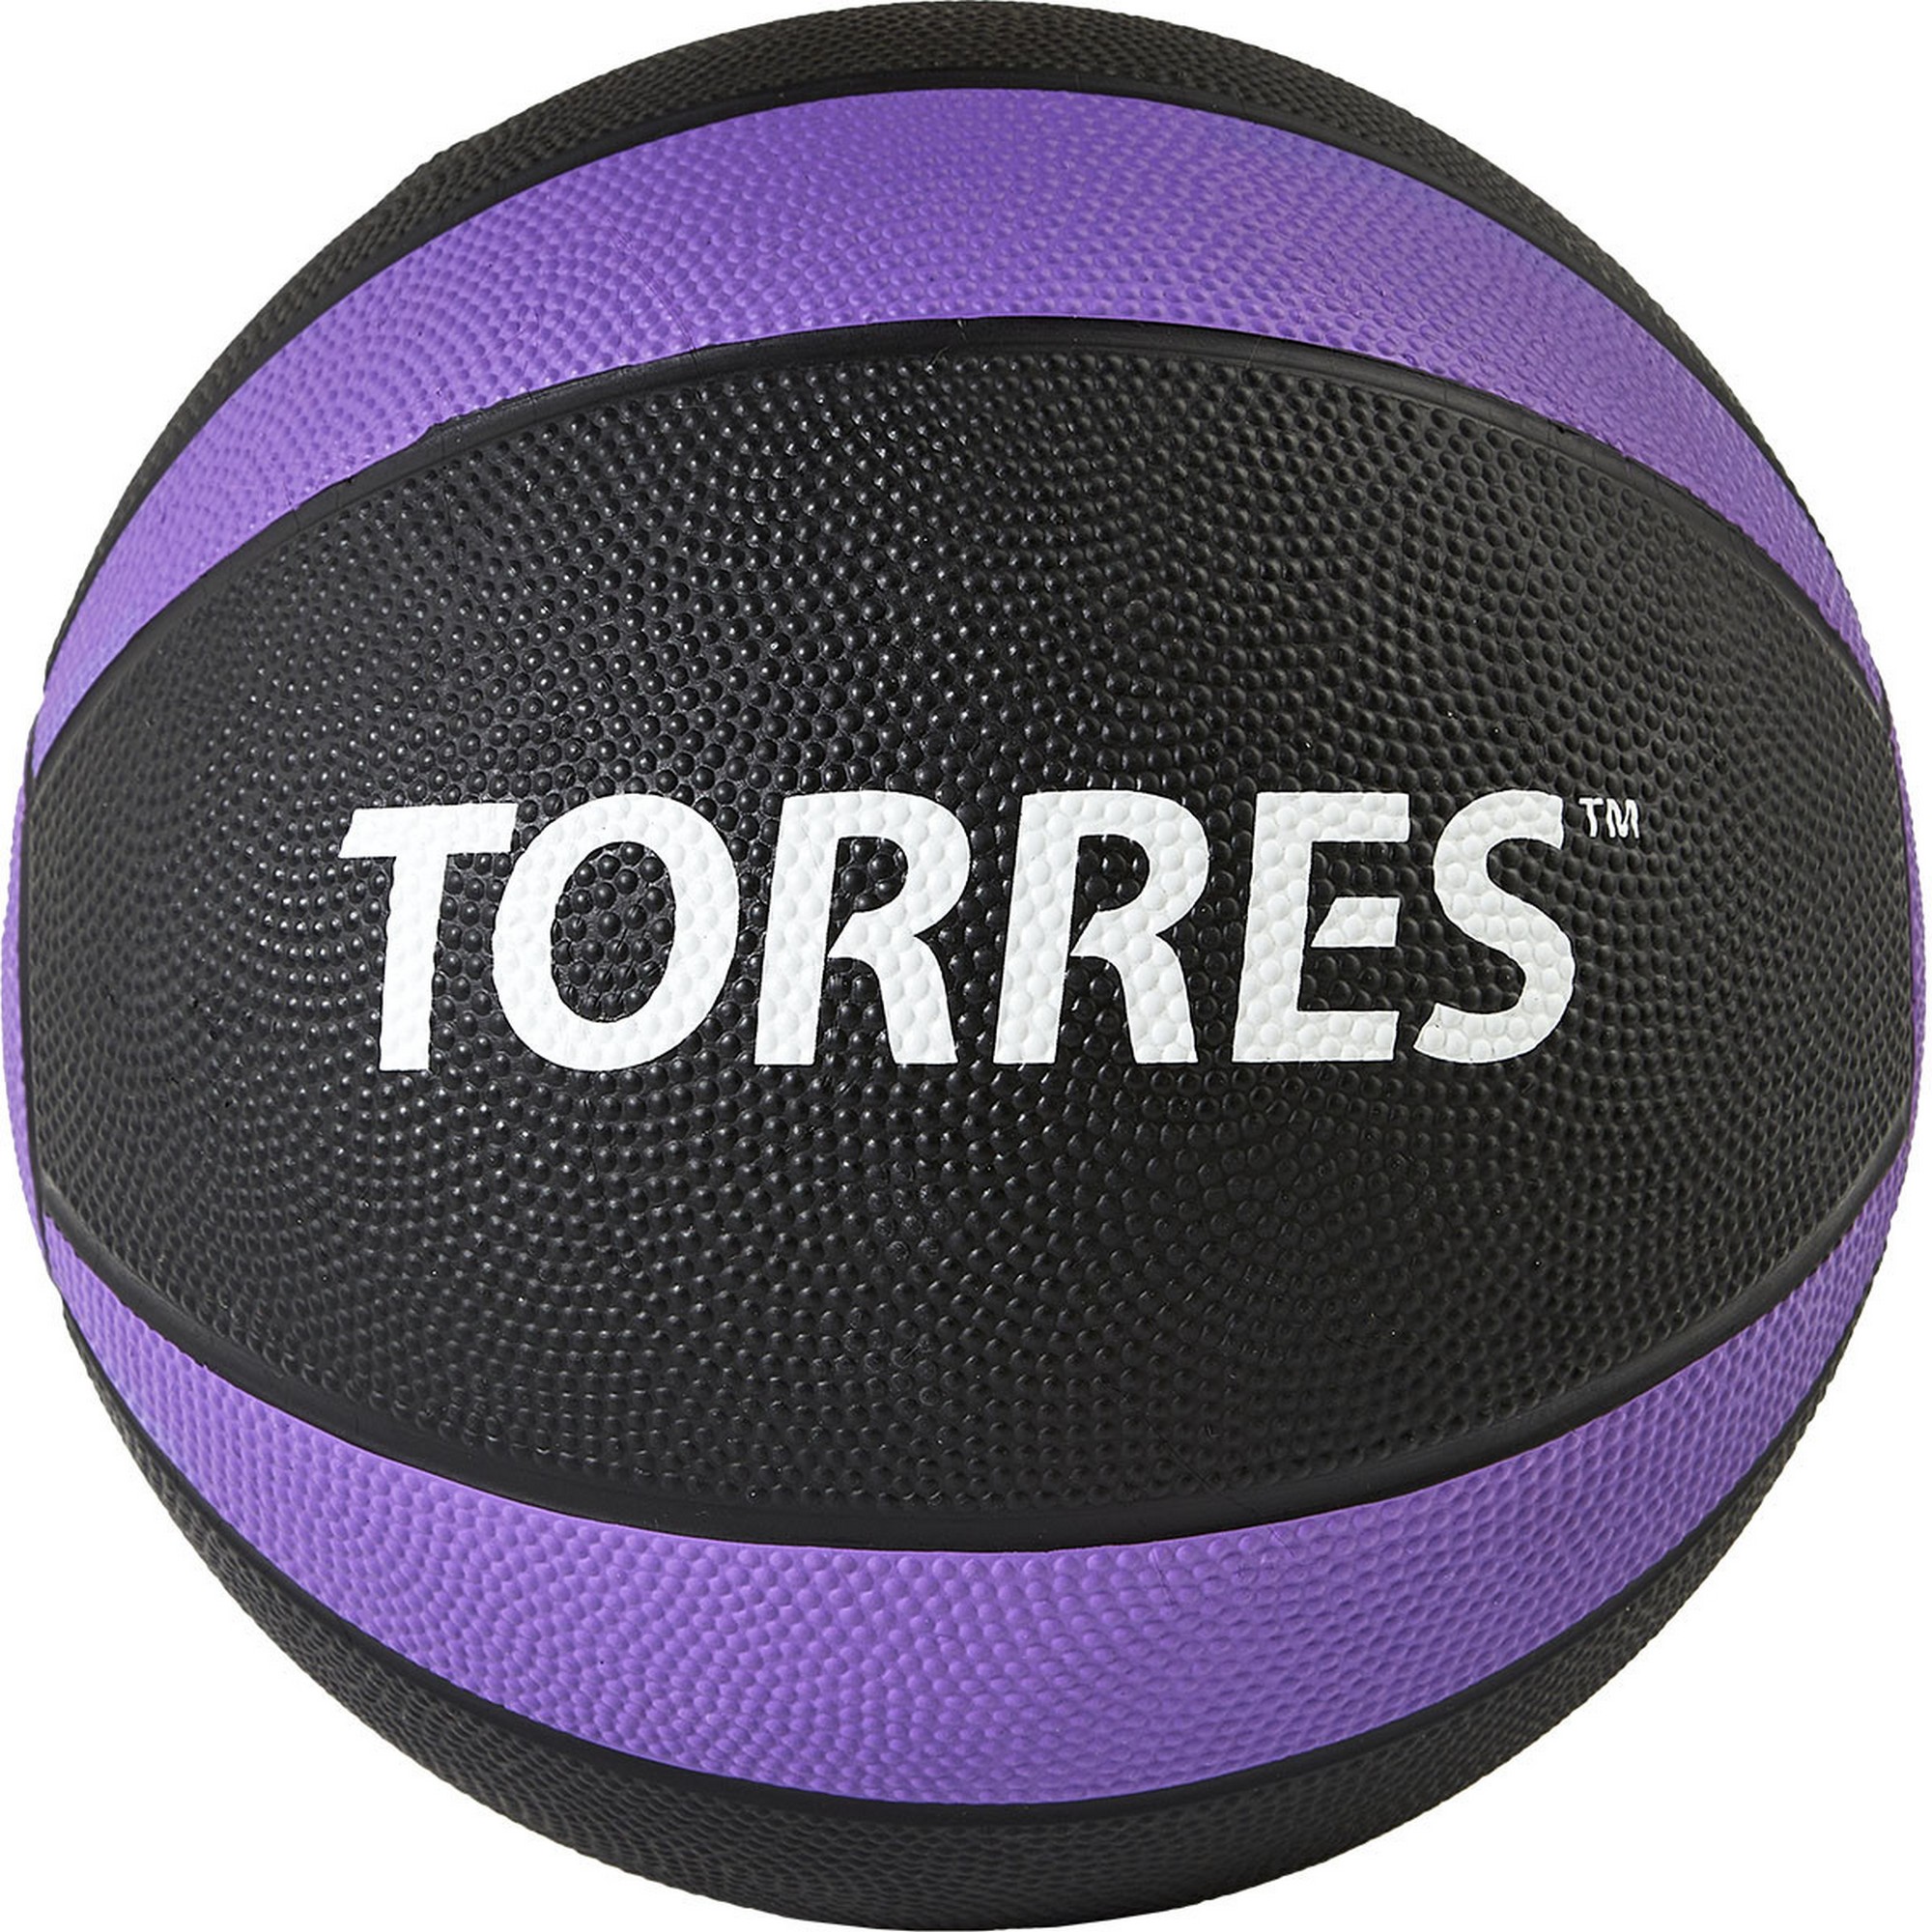  5 Torres AL00225 --